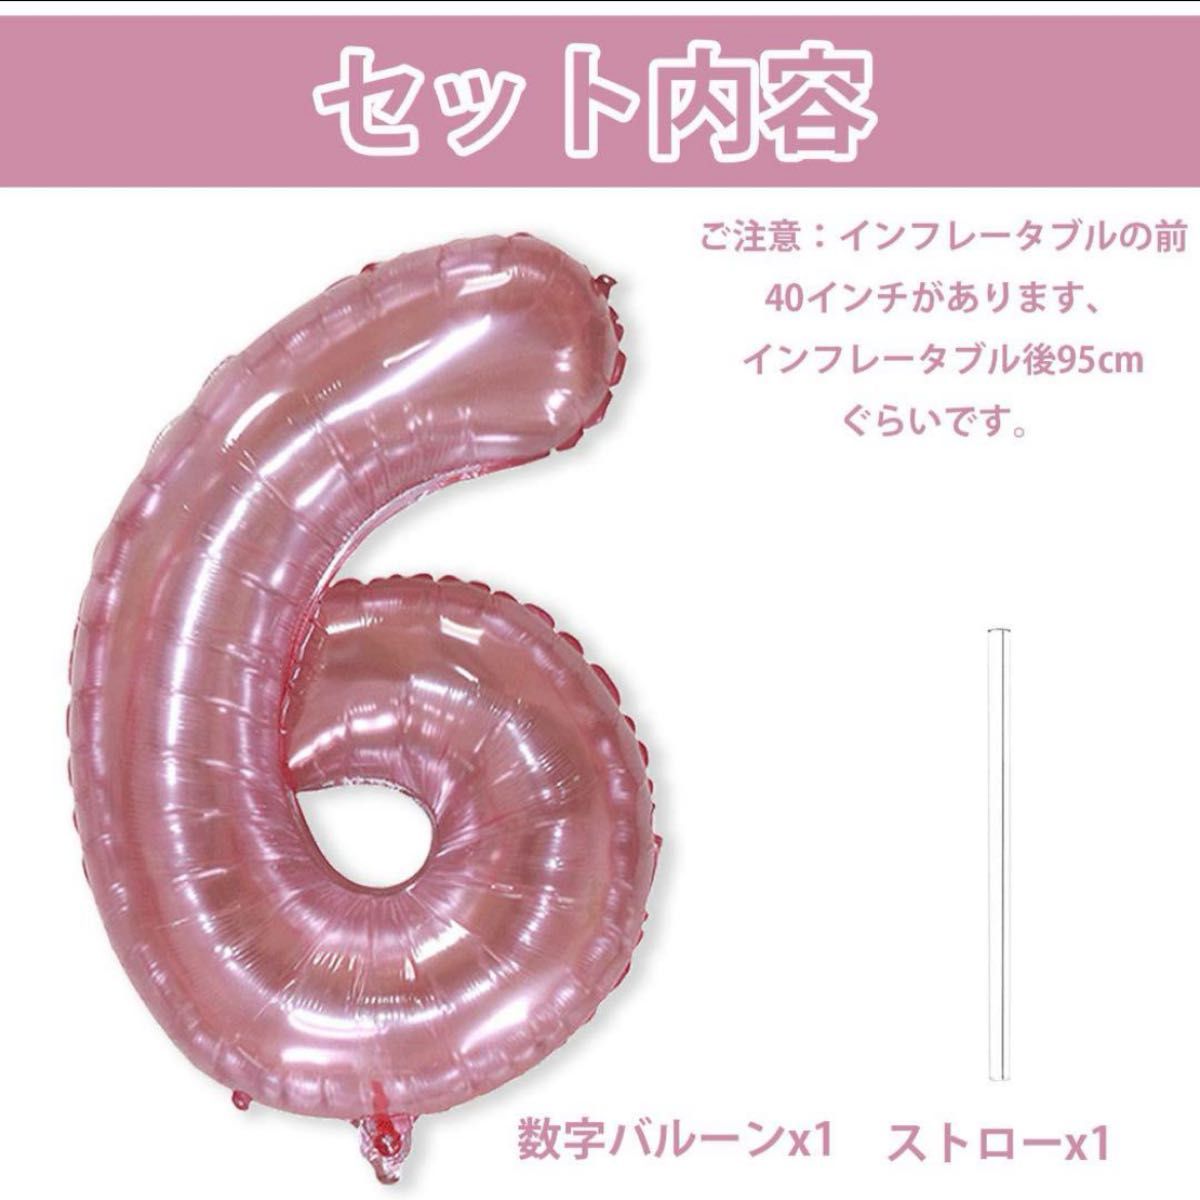 誕生日 数字バルーン ゼリー系 ラメ 40インチ 95cm pink